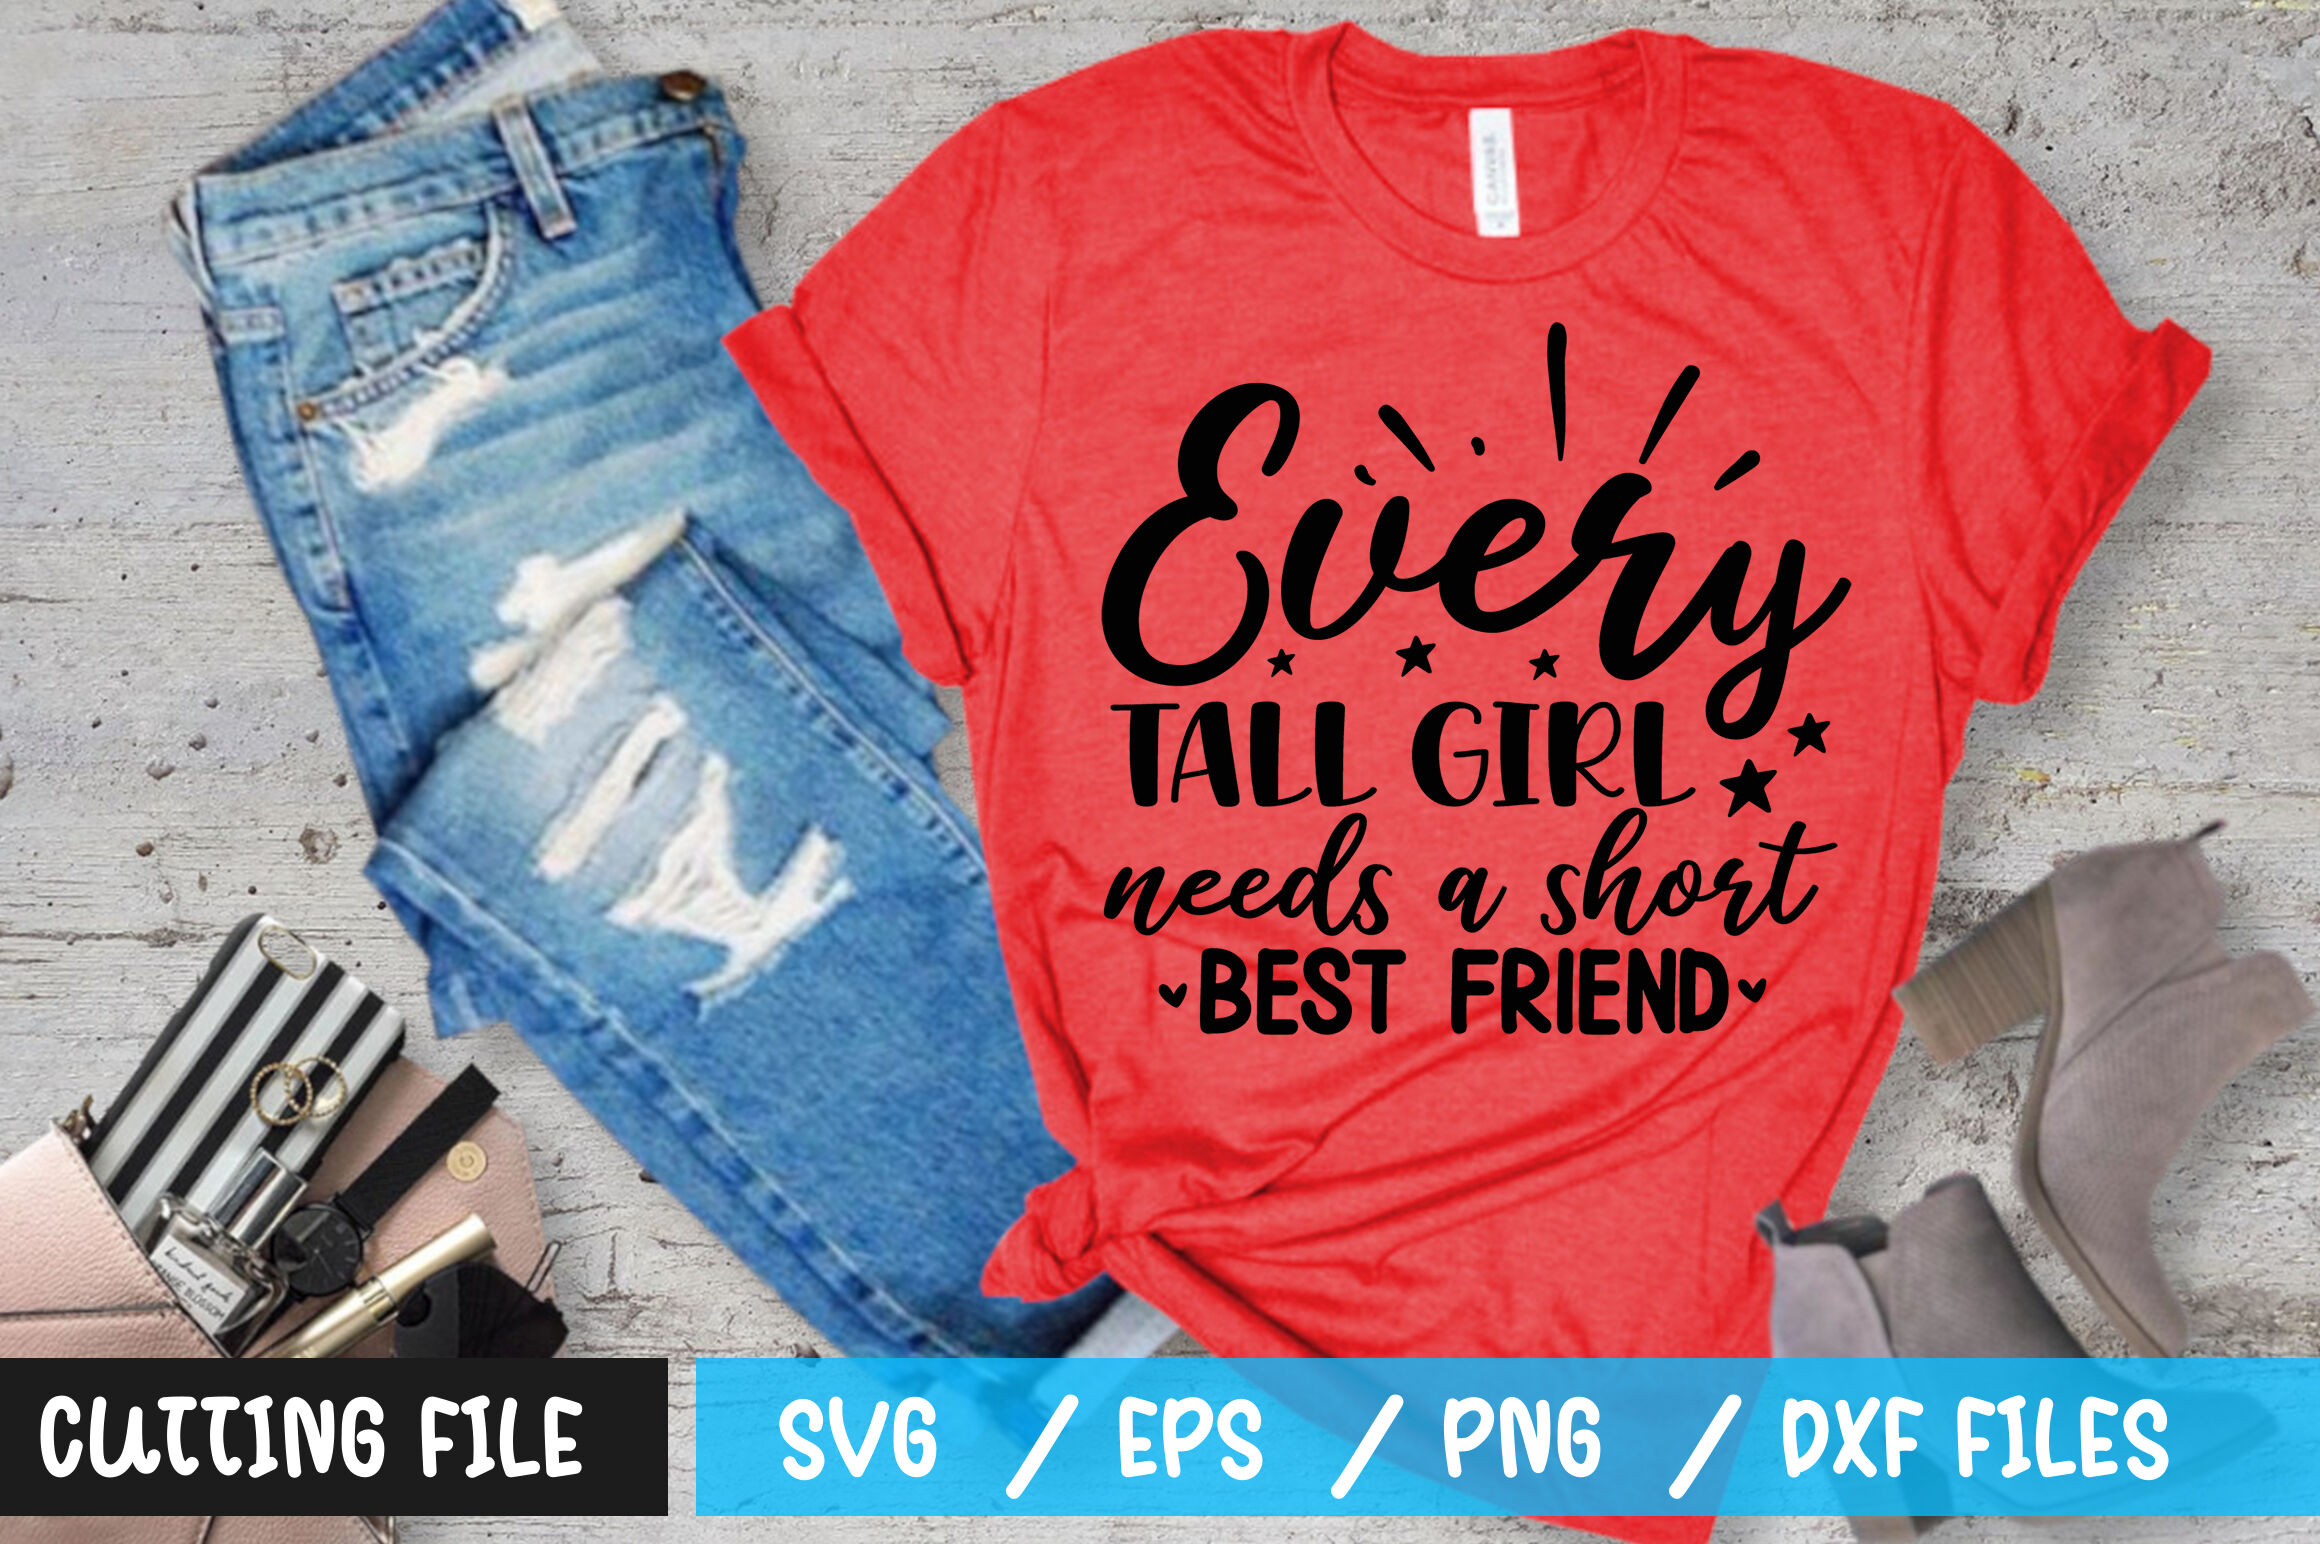 every tall girl needs a short best friend shirt